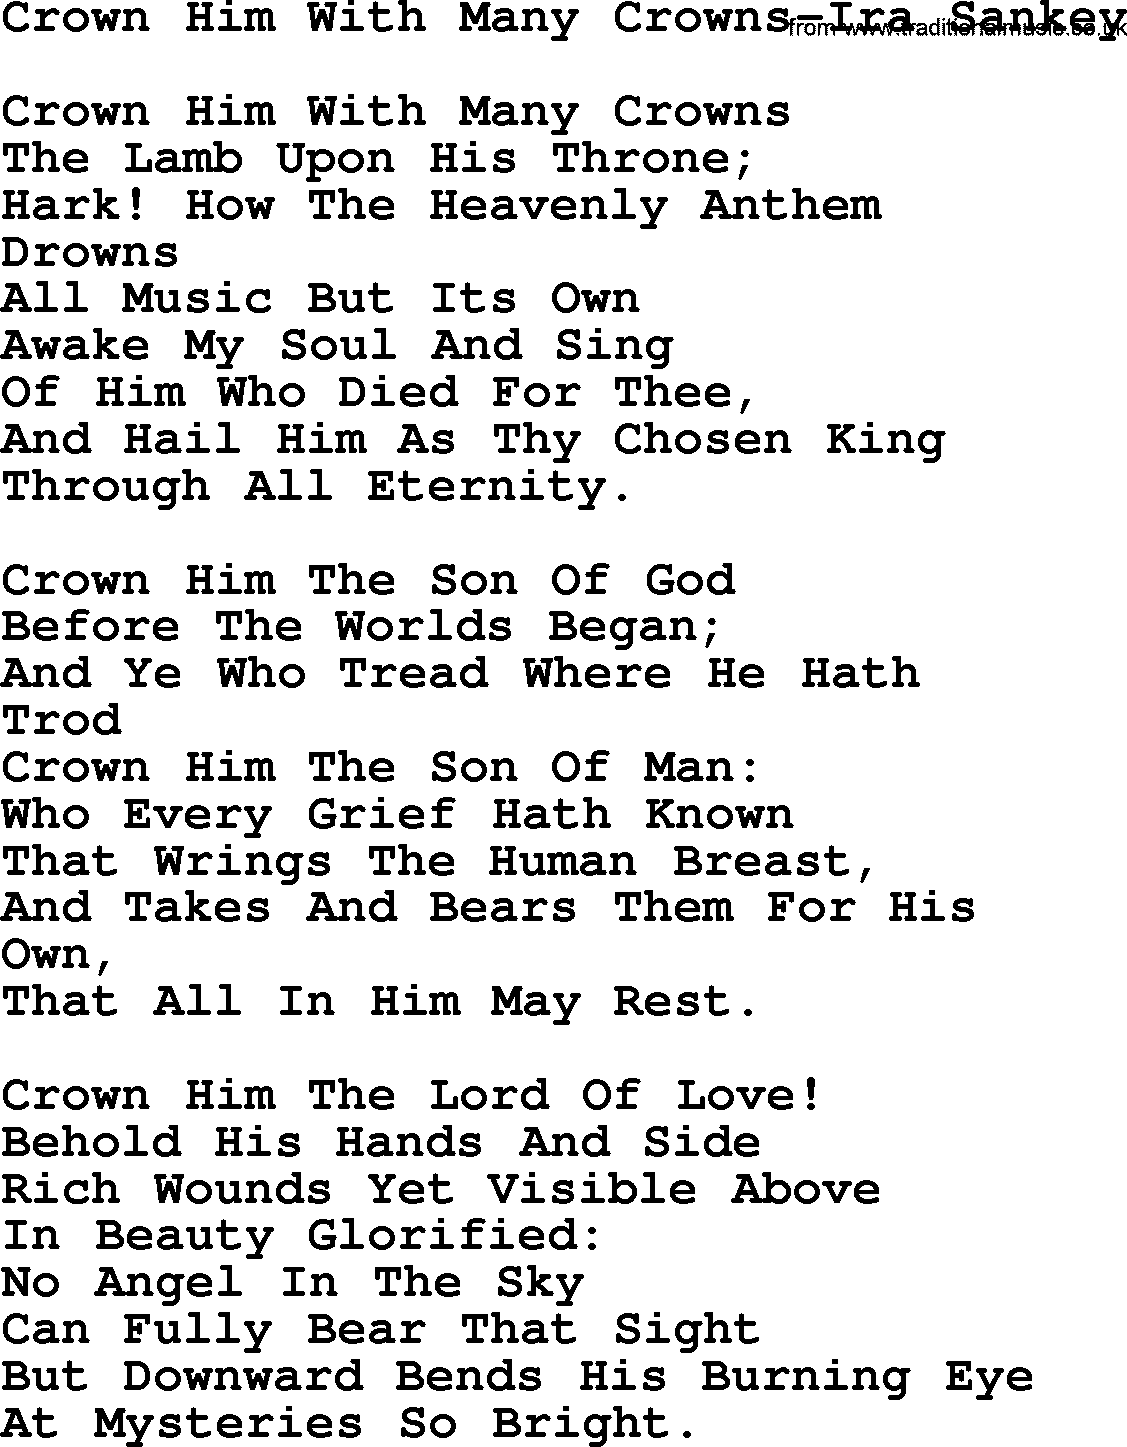 Ira Sankey hymn: Crown Him With Many Crowns-Ira Sankey, lyrics